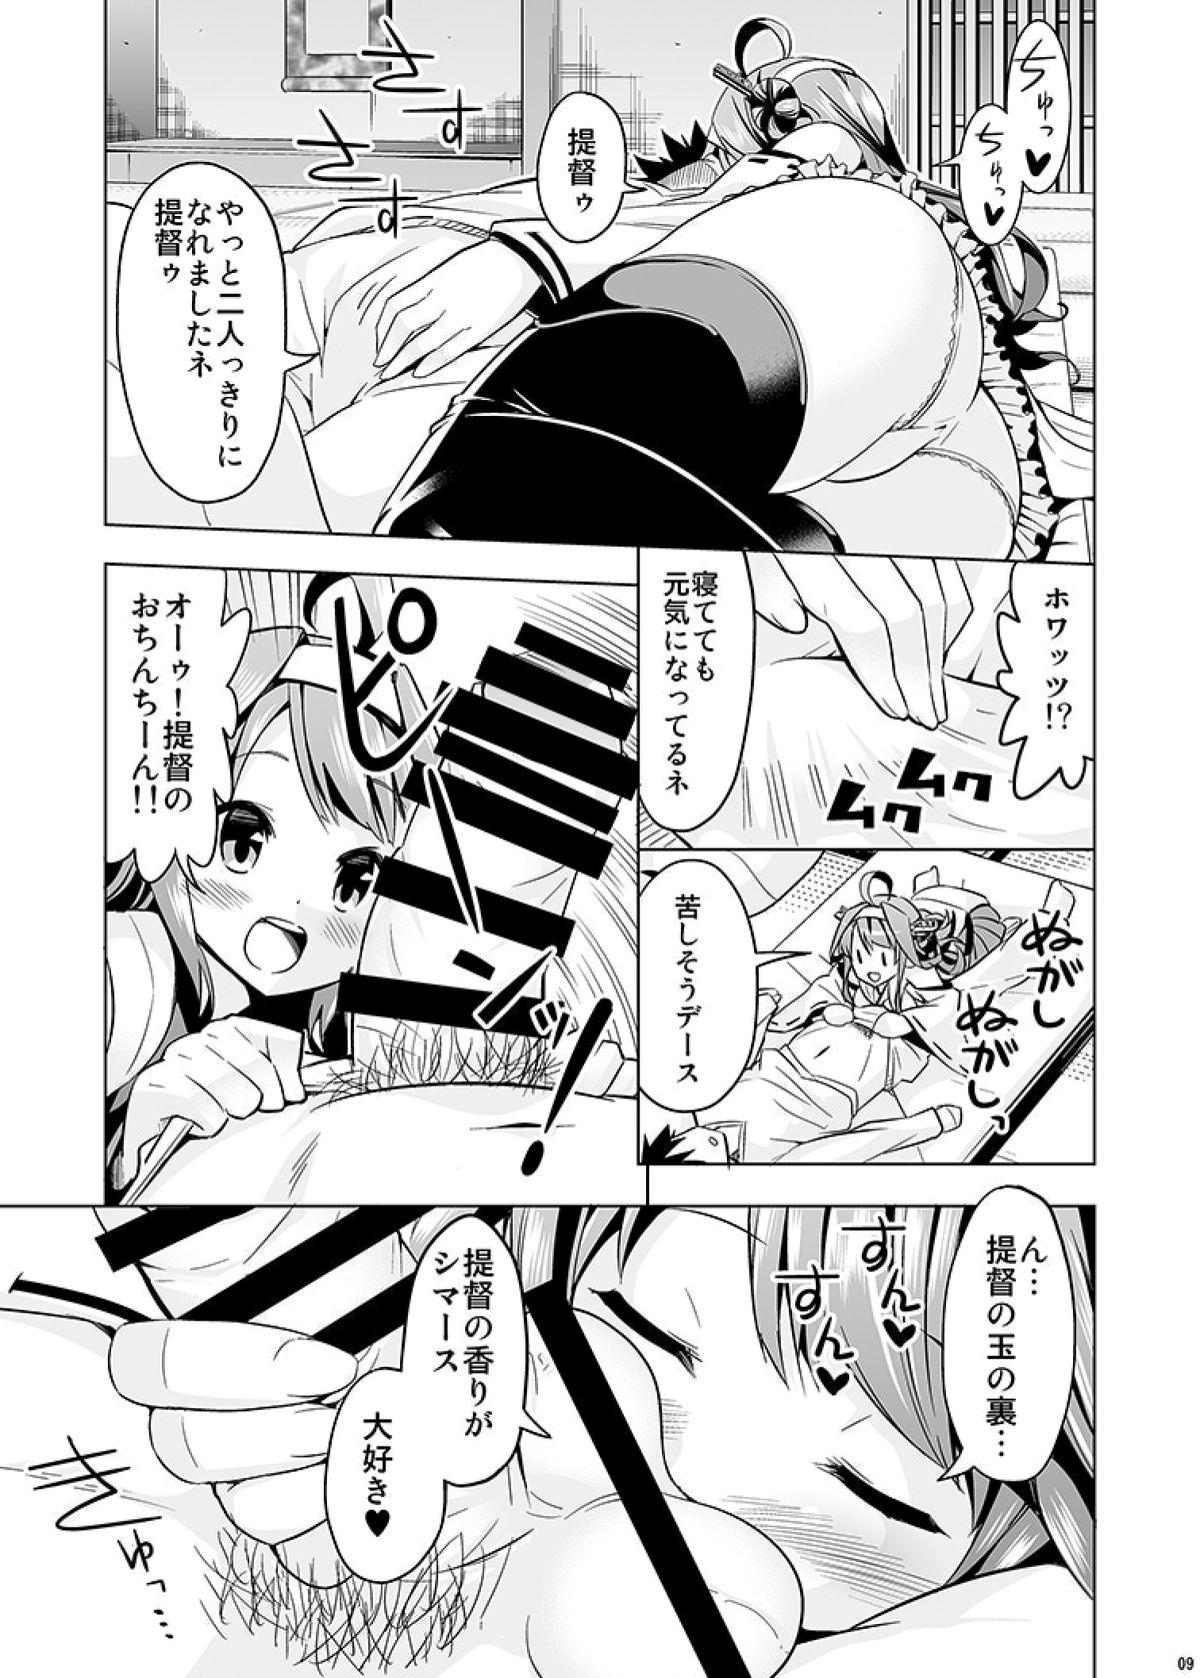 Fucking Hishokan no Hisho 2 Kongou - Kantai collection Vergon - Page 9